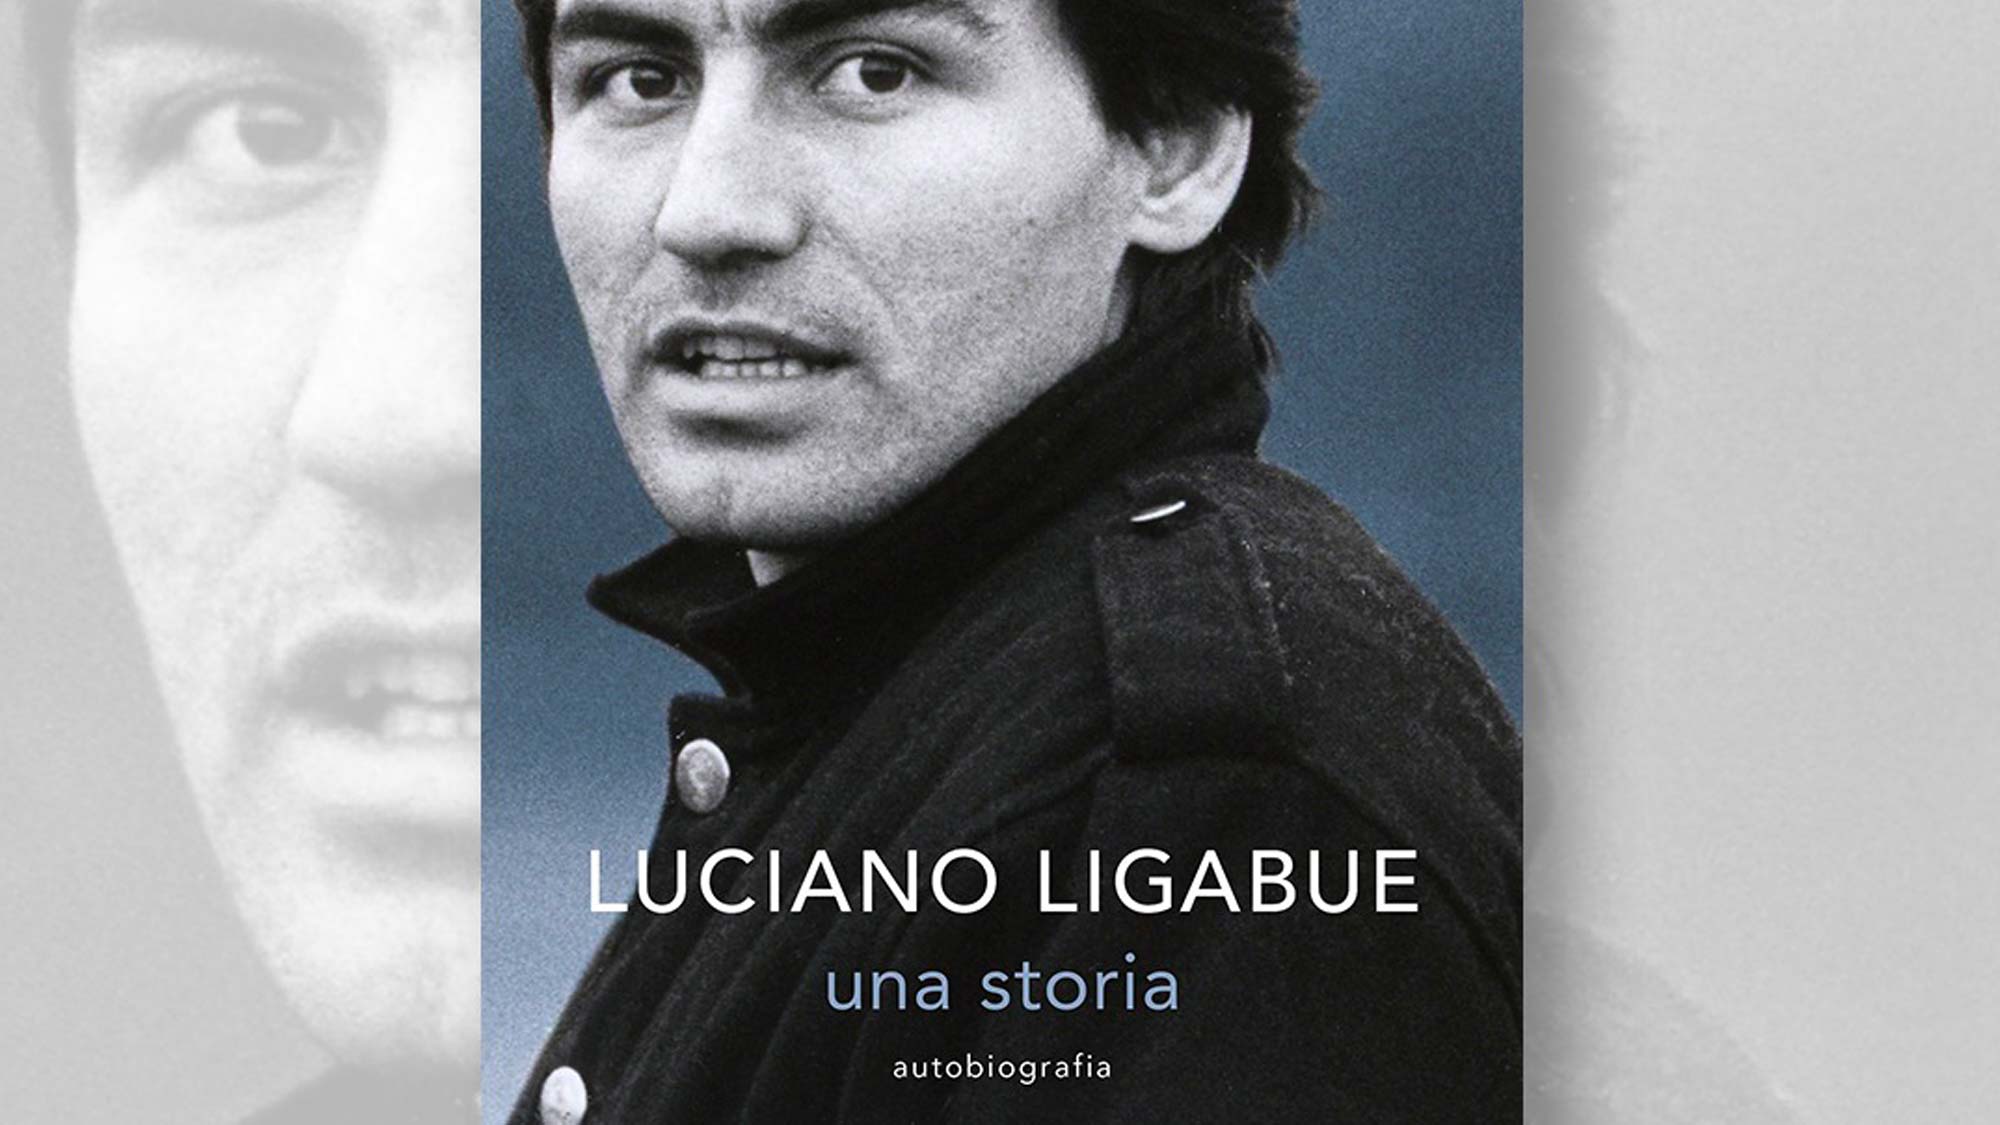 Libro: Luciano Ligabue - una storia